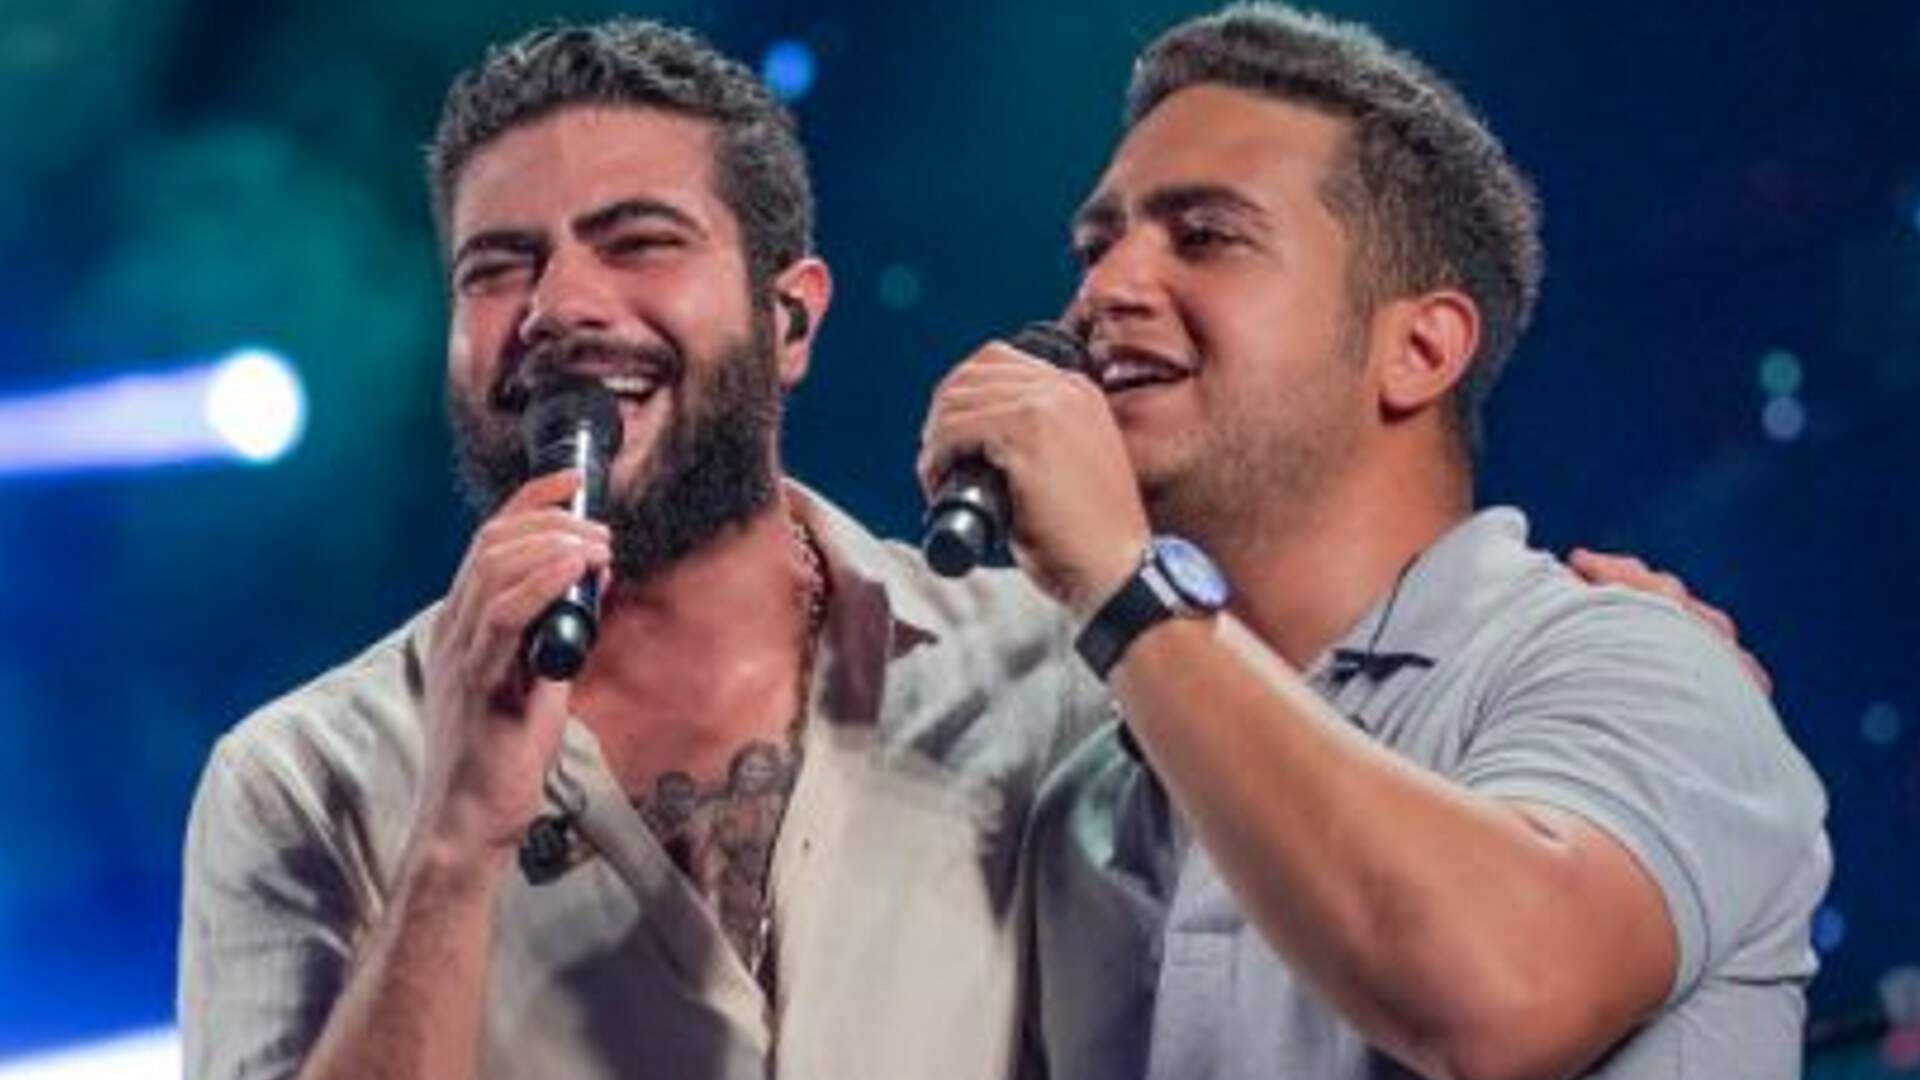 Jovens “fãs” cometem gafe com Henrique, da dupla com Juliano, em show e cena do mico viraliza - Metropolitana FM